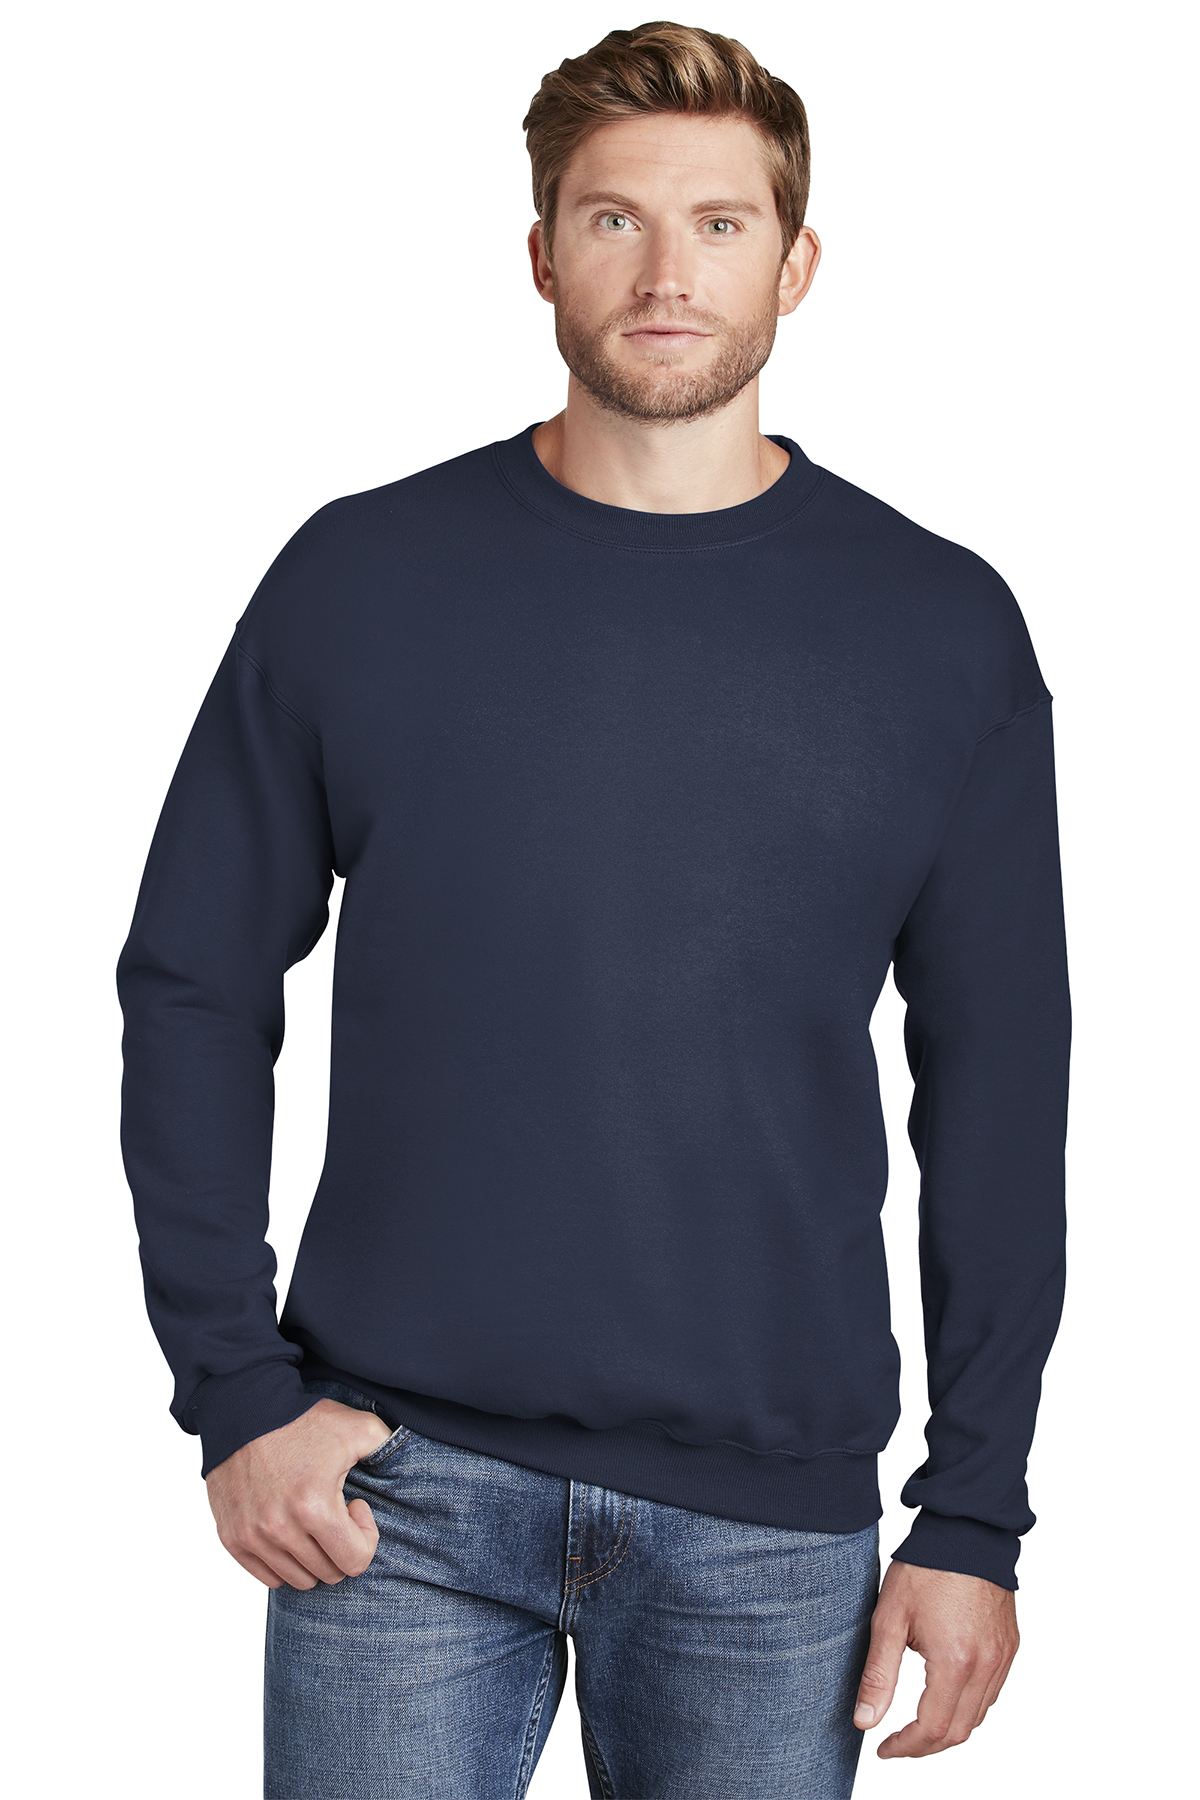 Hanes Ultimate Cotton - Crewneck Sweatshirt | Product | Company Casuals